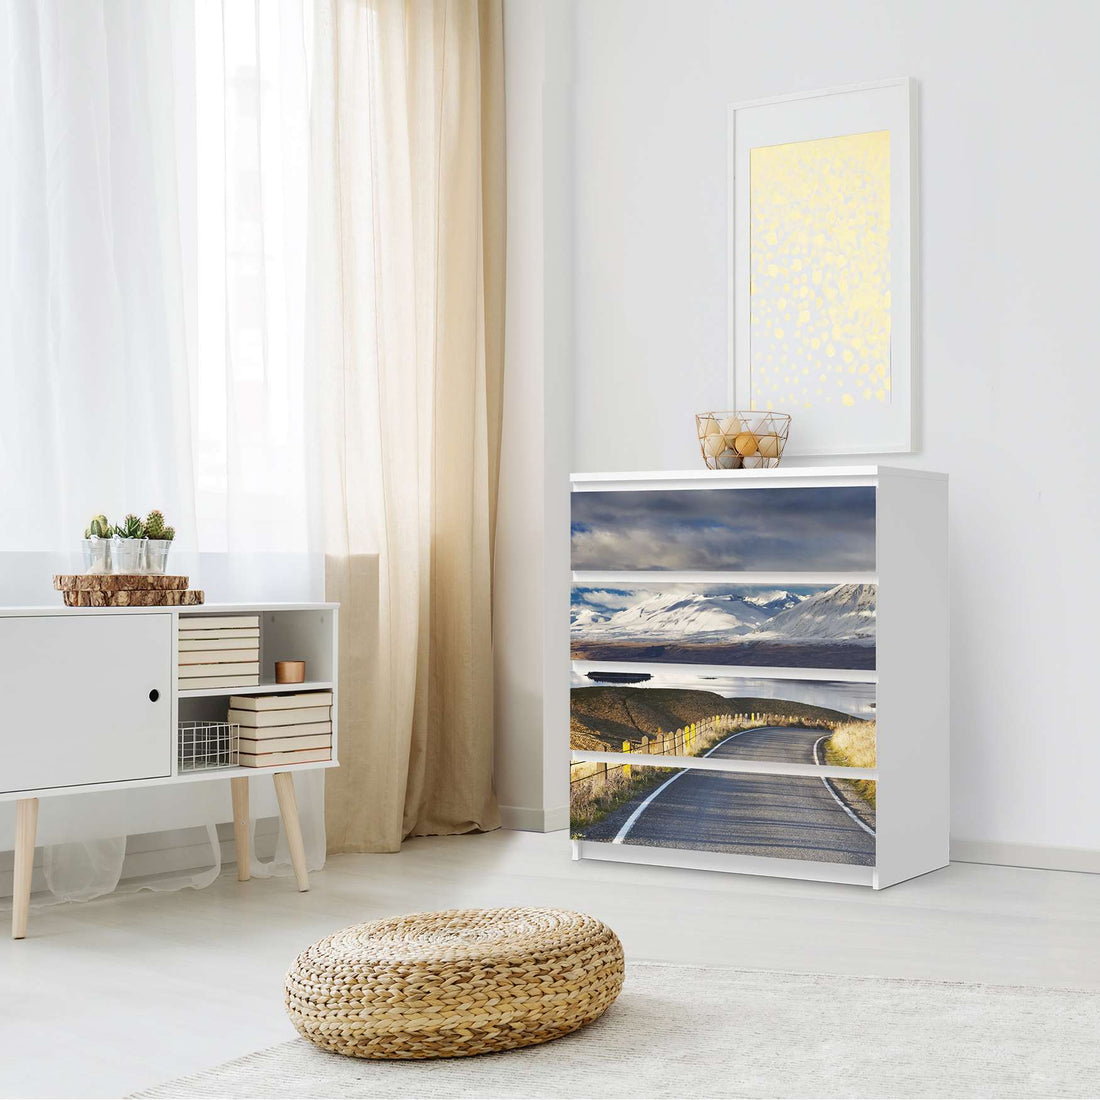 Folie für Möbel New Zealand - IKEA Malm Kommode 4 Schubladen - Schlafzimmer